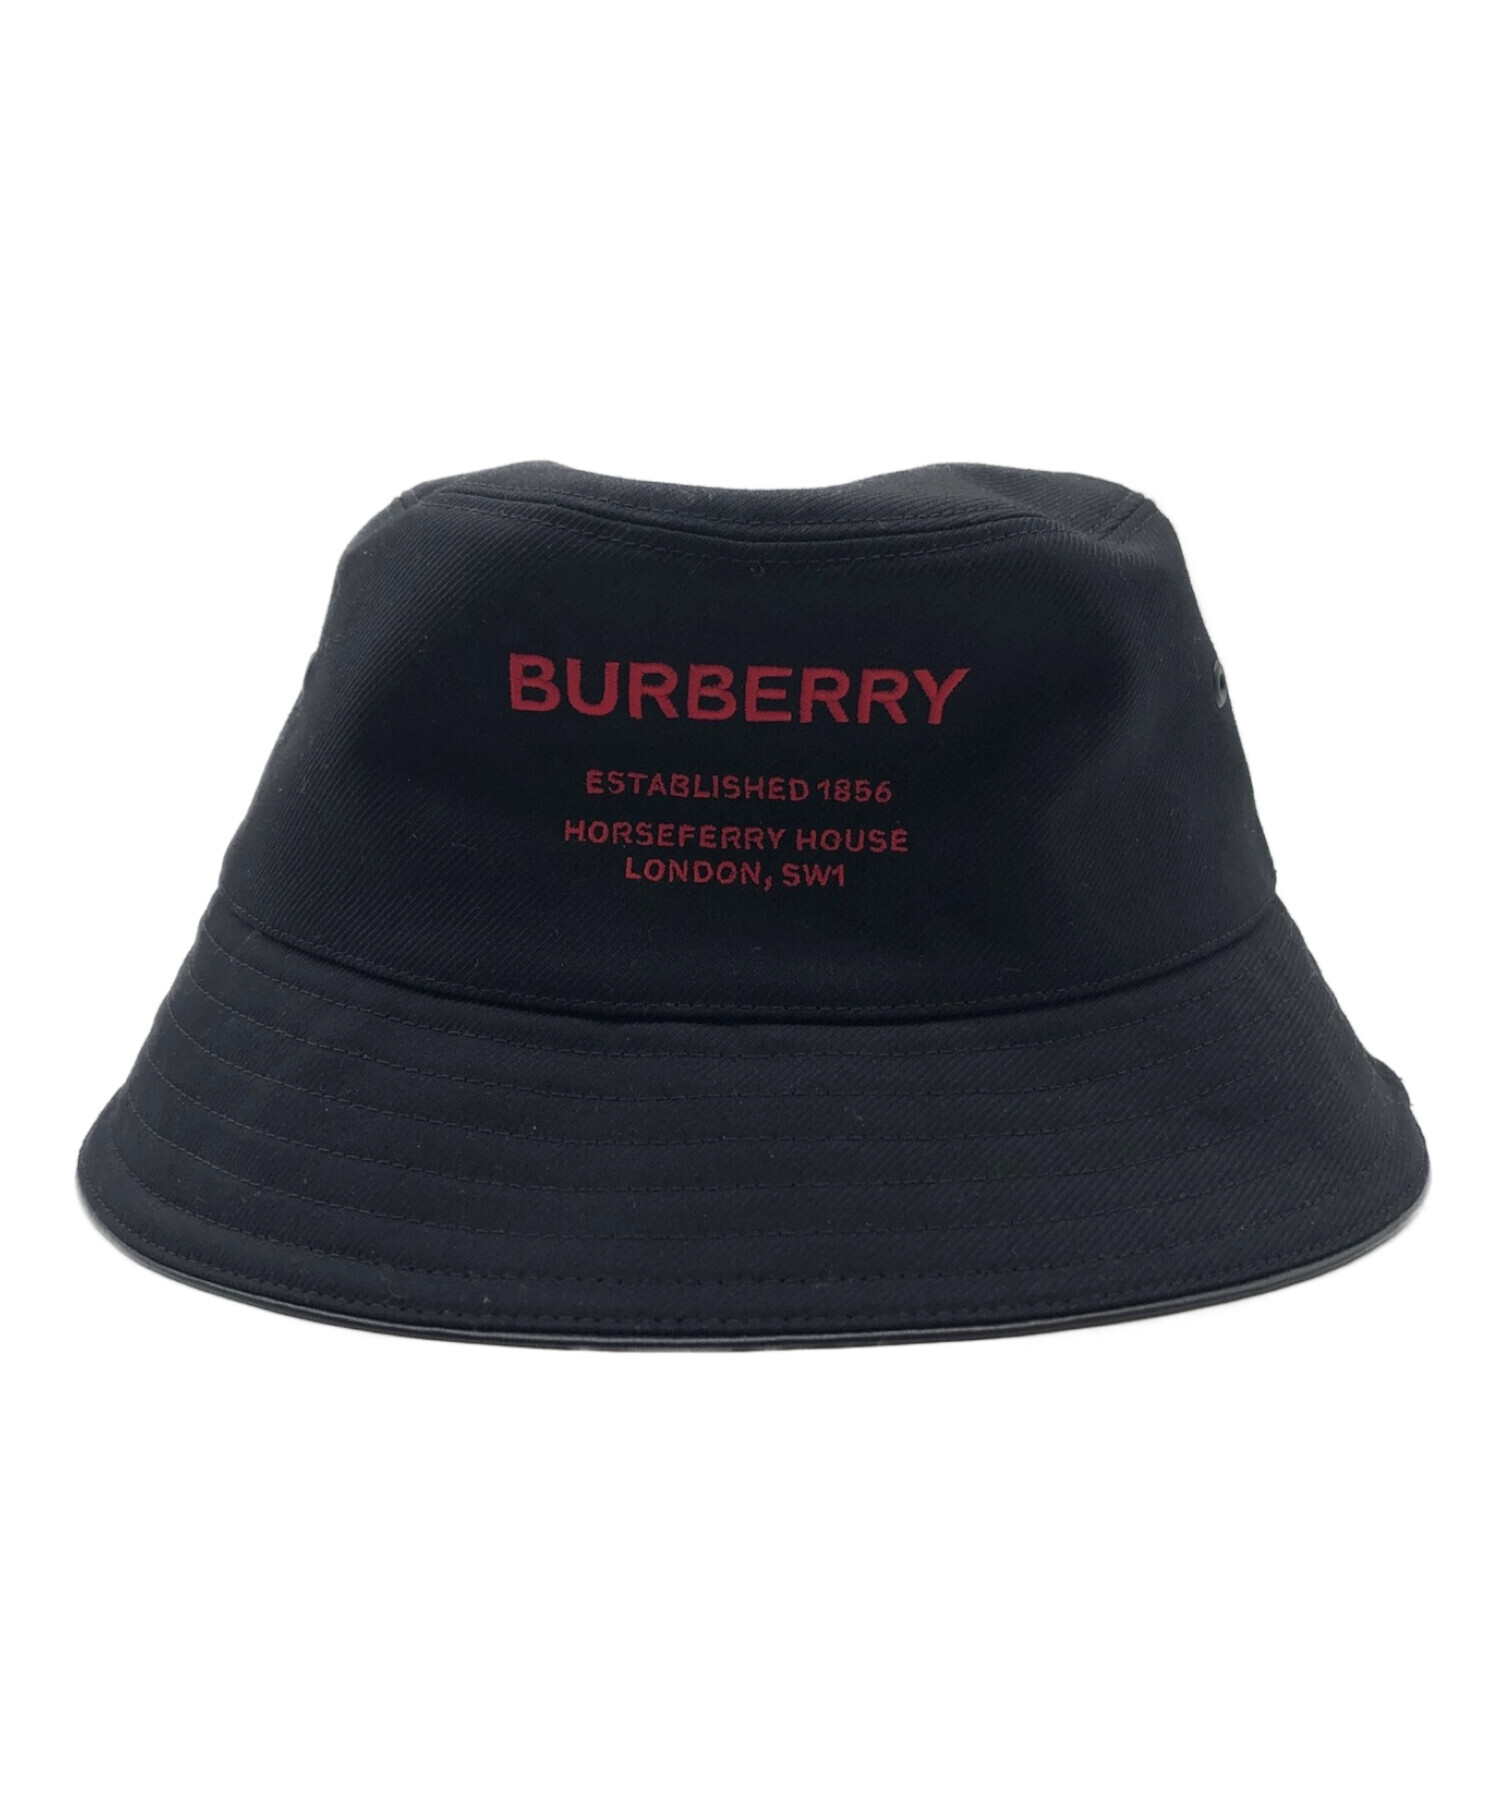 BURBERRY (バーバリー) バケットハット ブラック サイズ:L